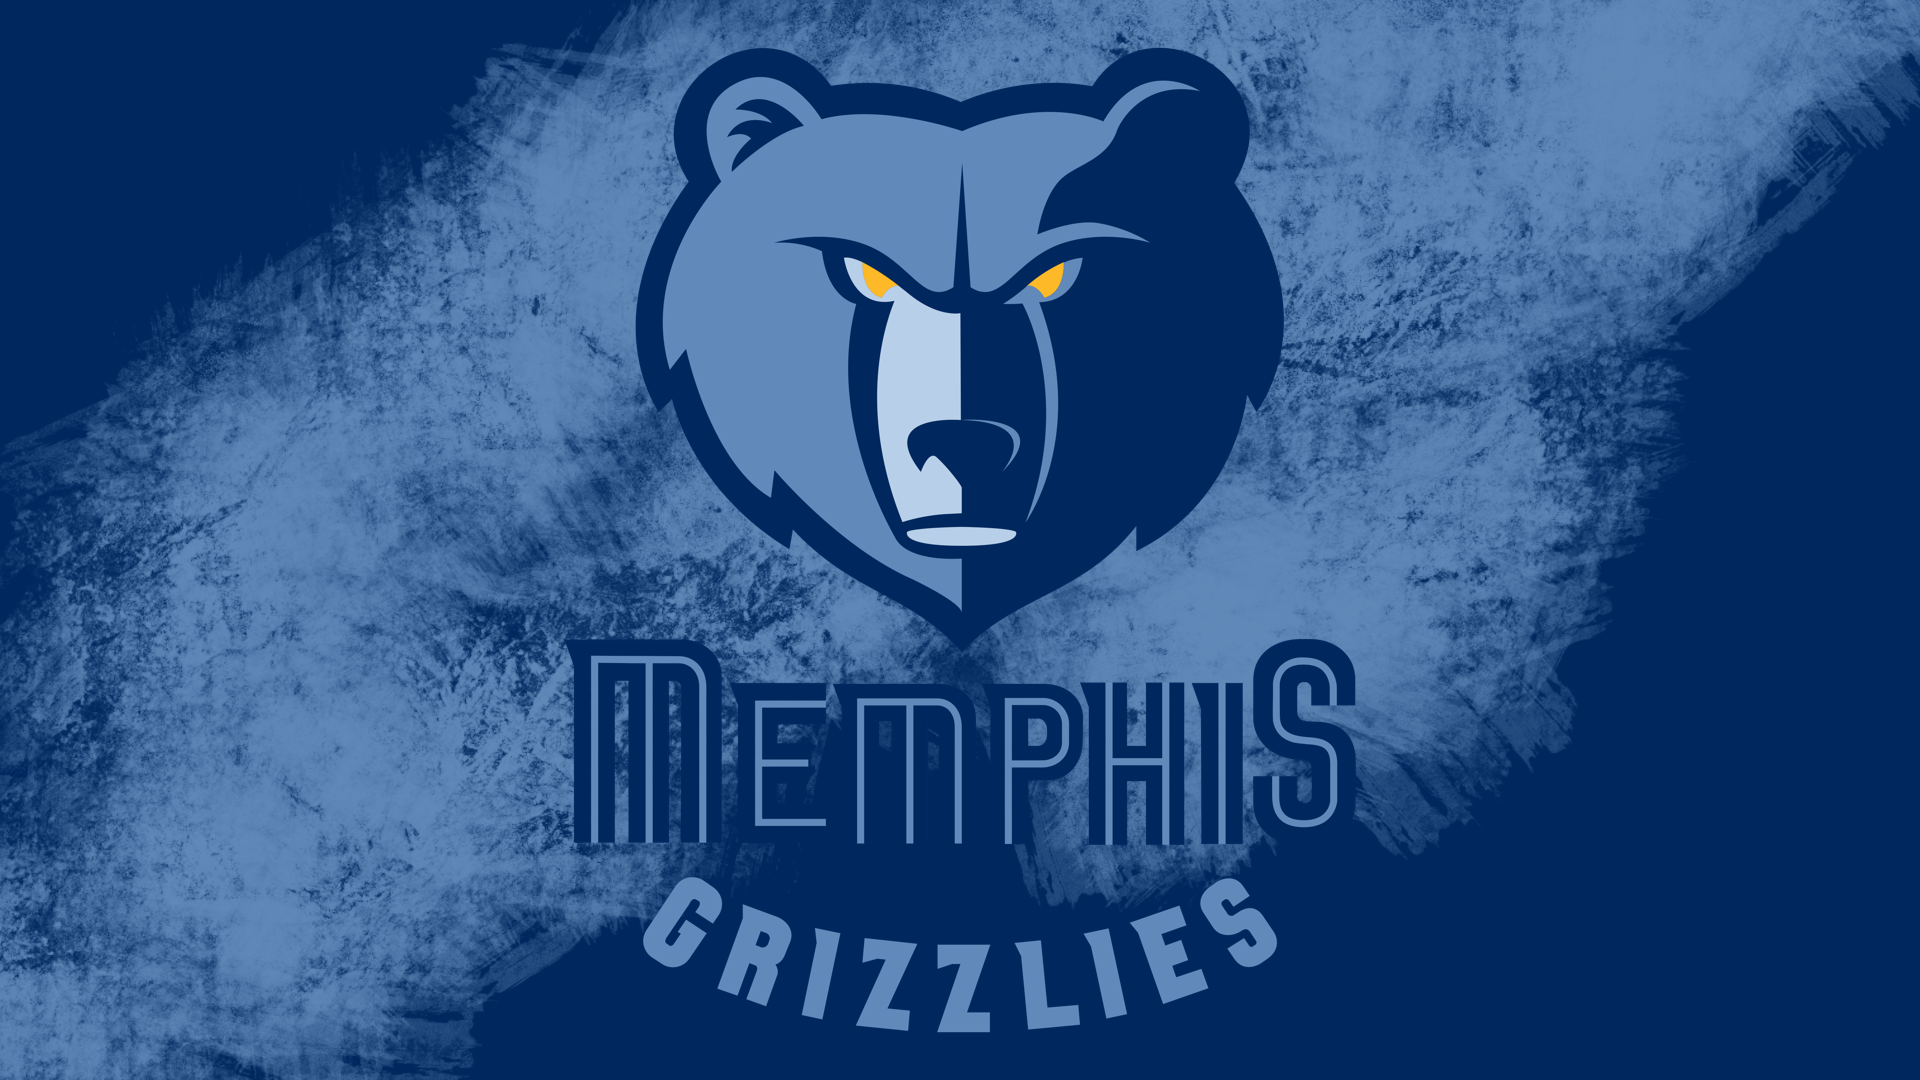 Wallpapers Memphis Grizzlies